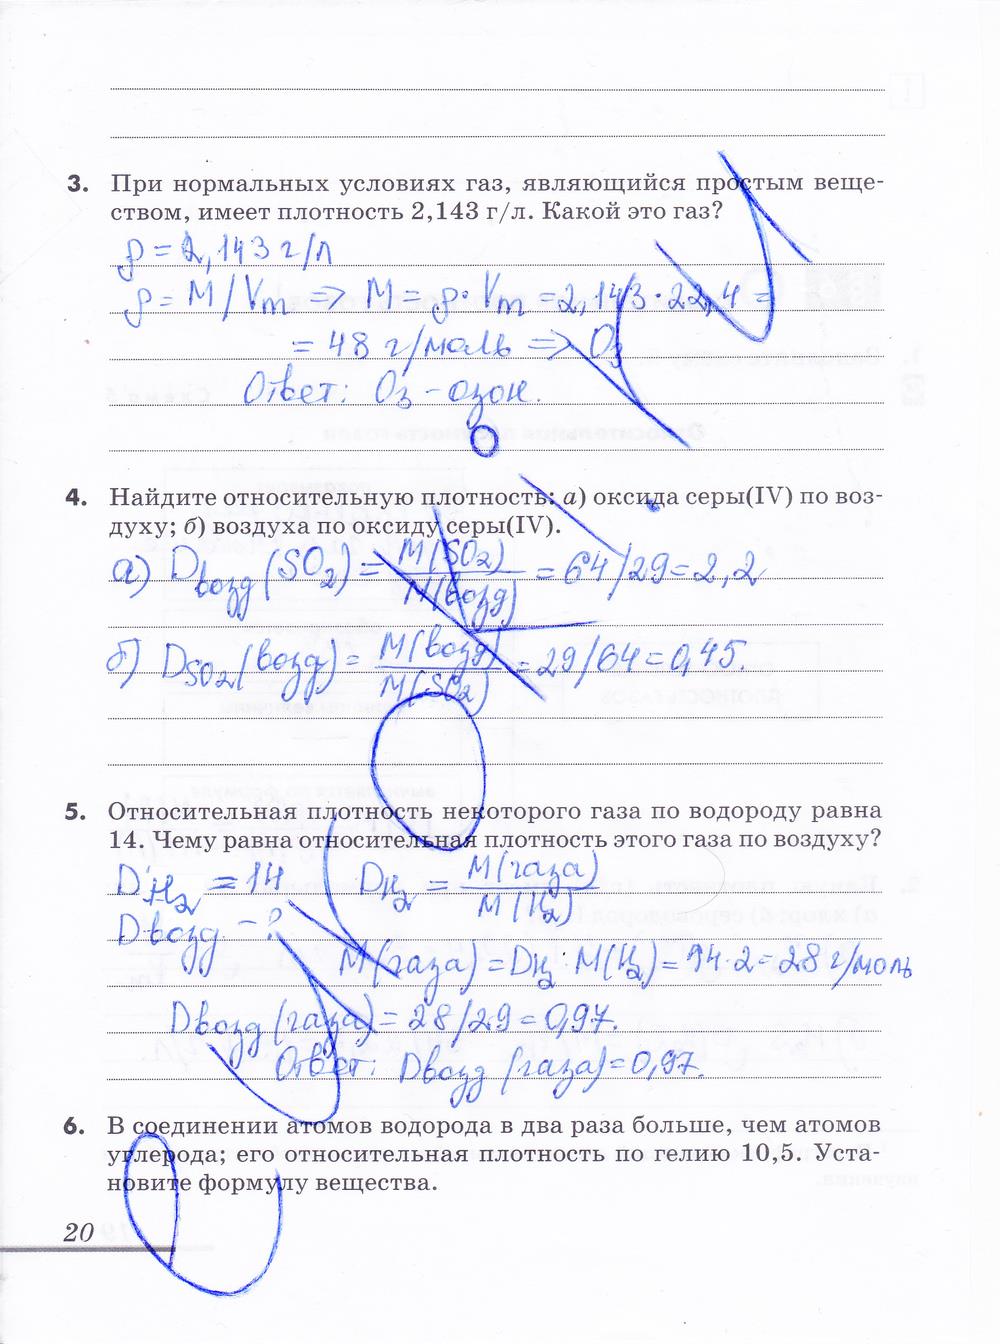 гдз 9 класс рабочая тетрадь страница 20 химия Еремин, Дроздов